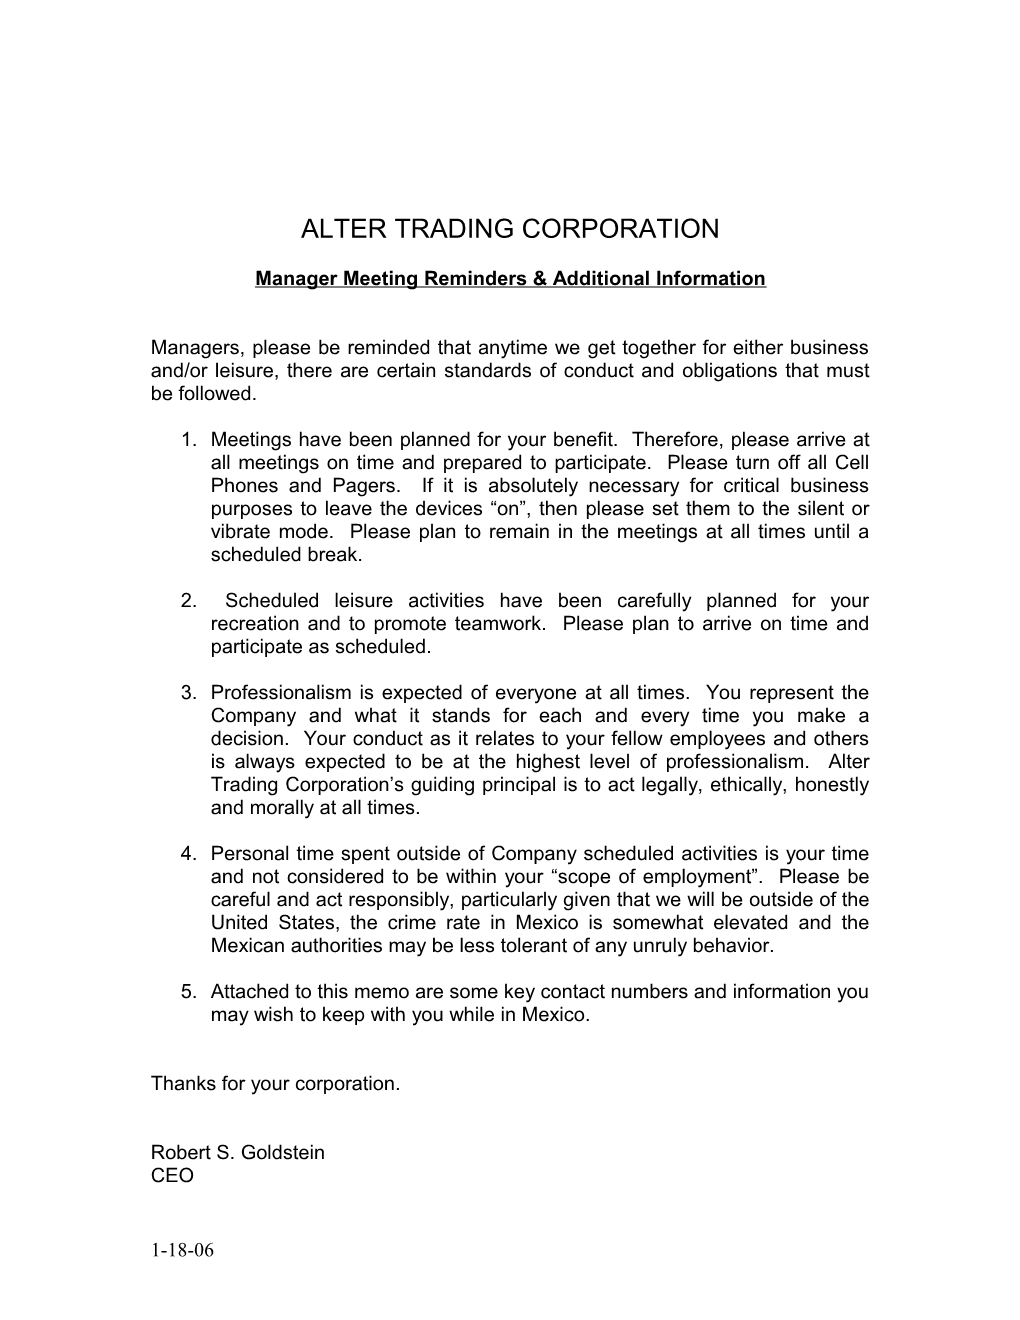 Alter Trading Company